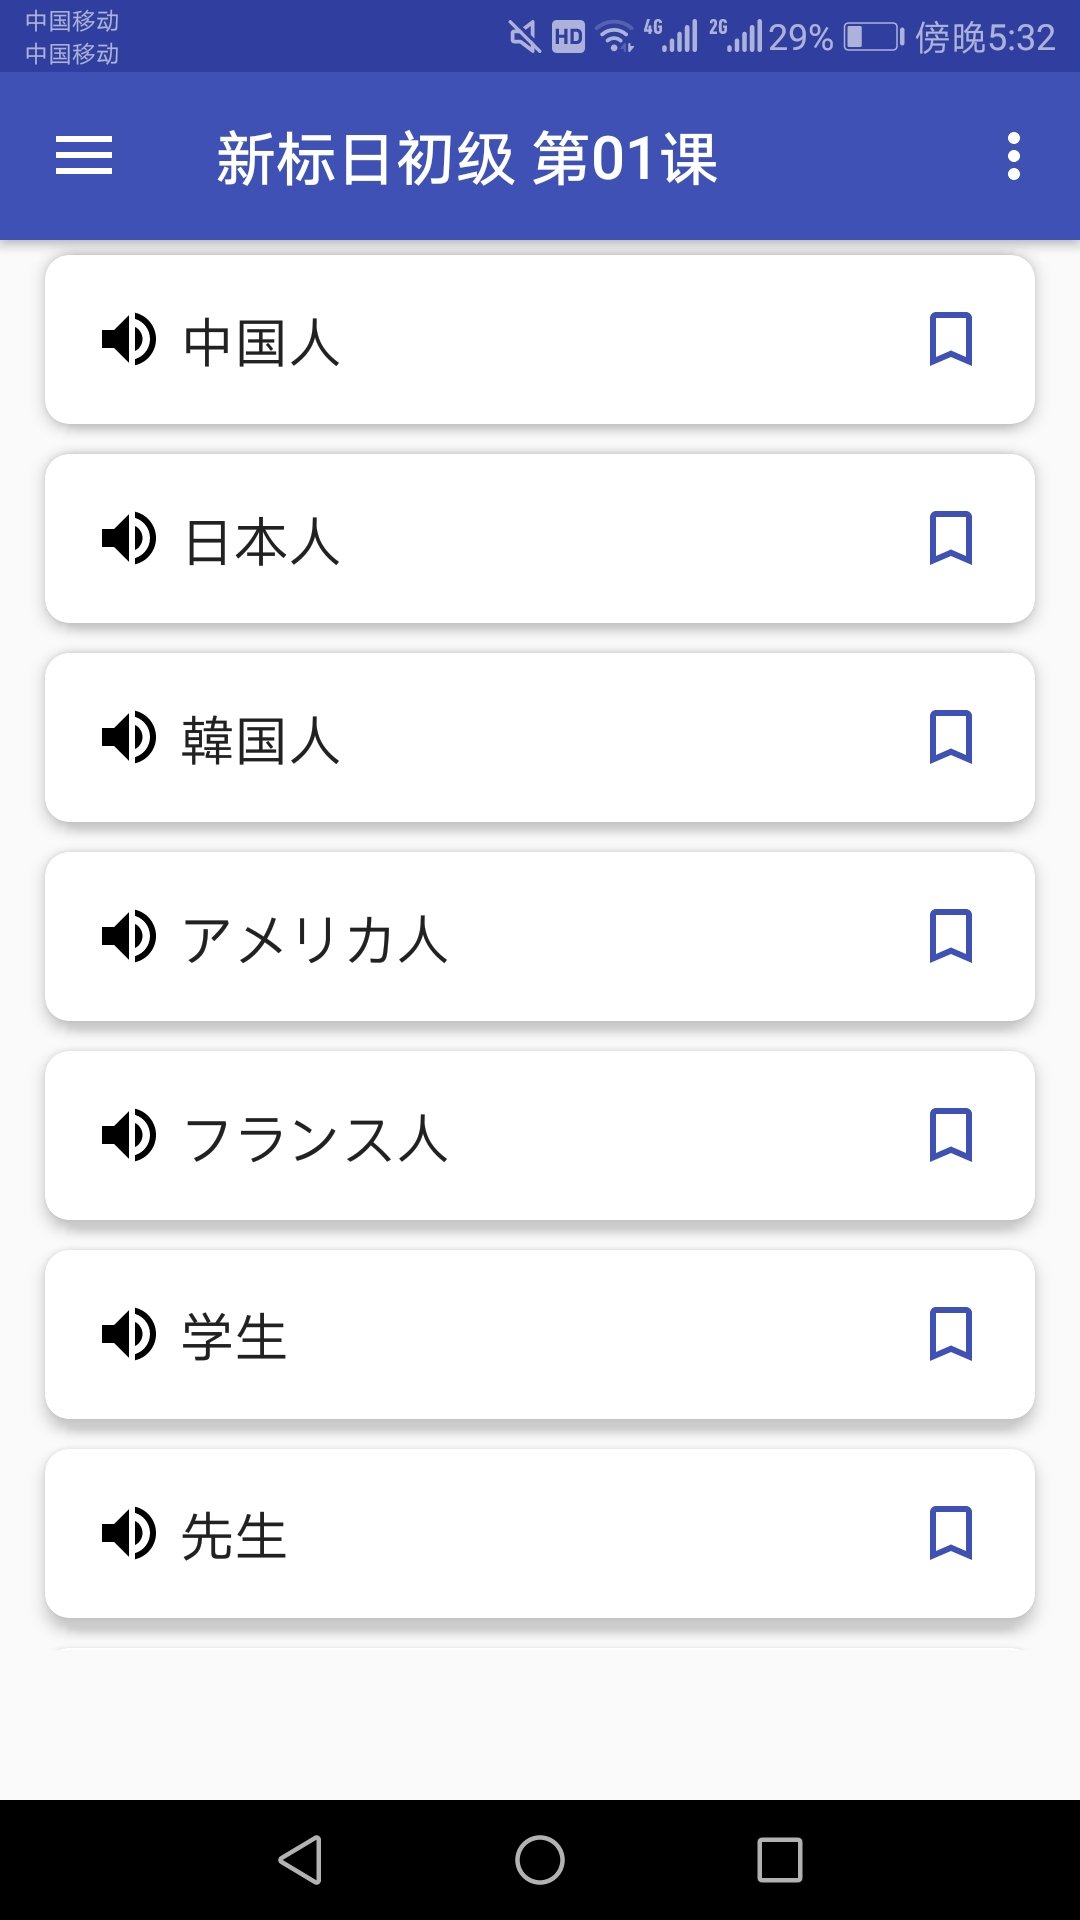 日语学习助手 1